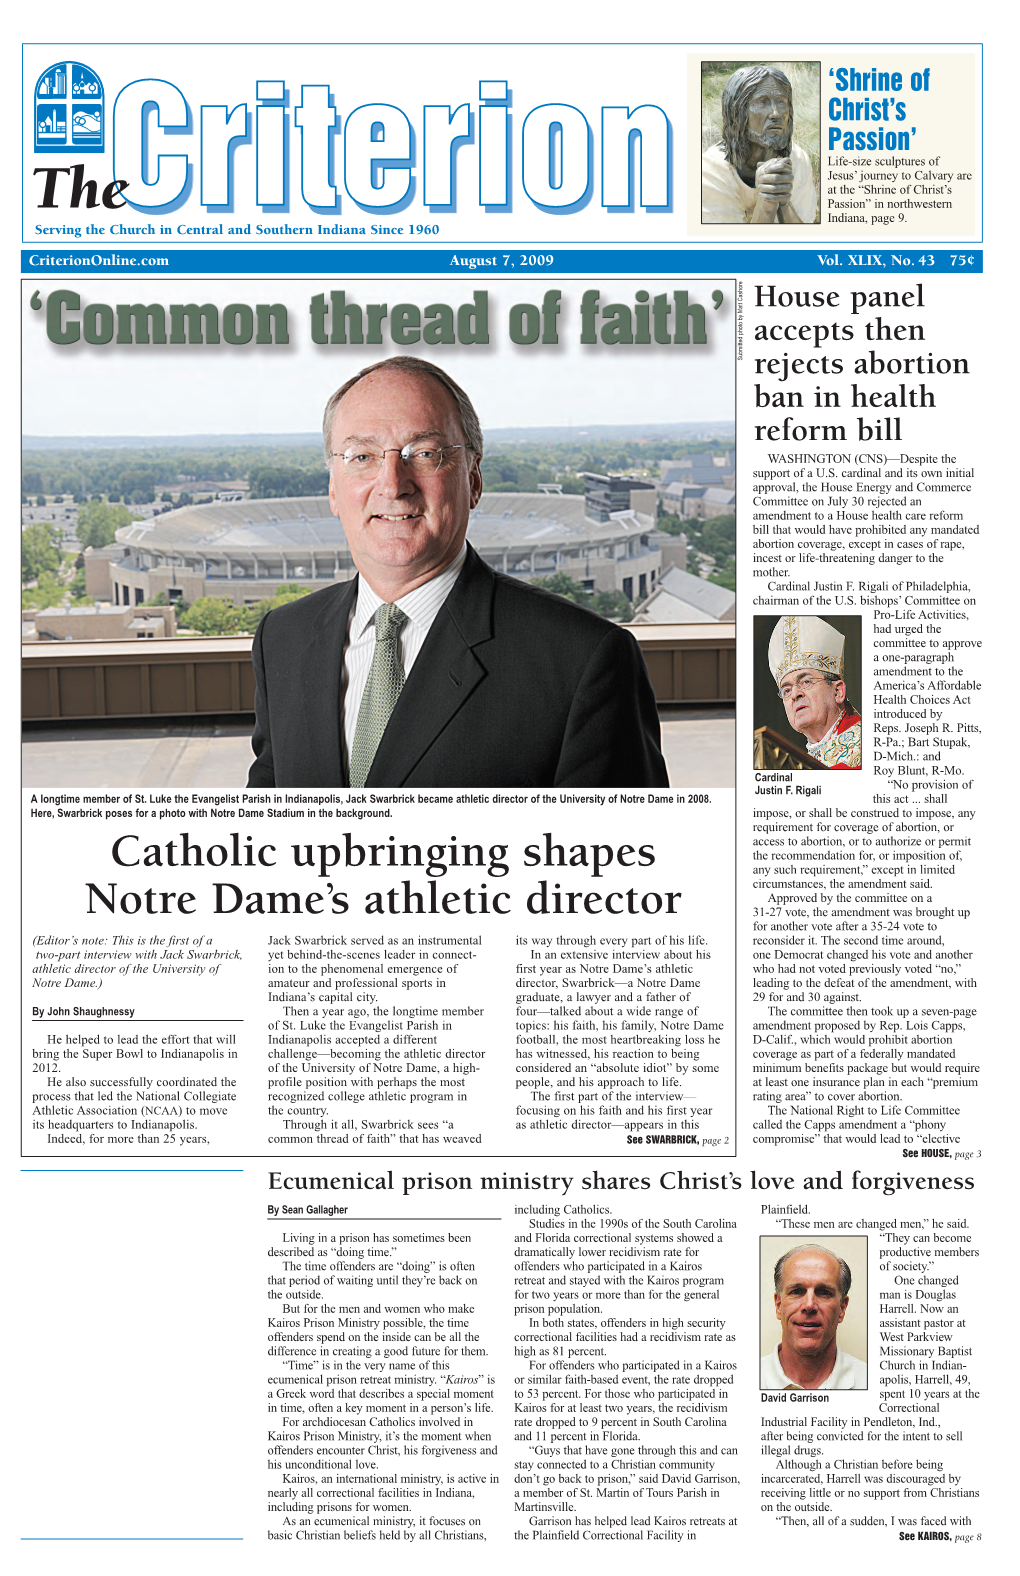 Catholic Upbringing Shapes Notre Dame's Athletic Director